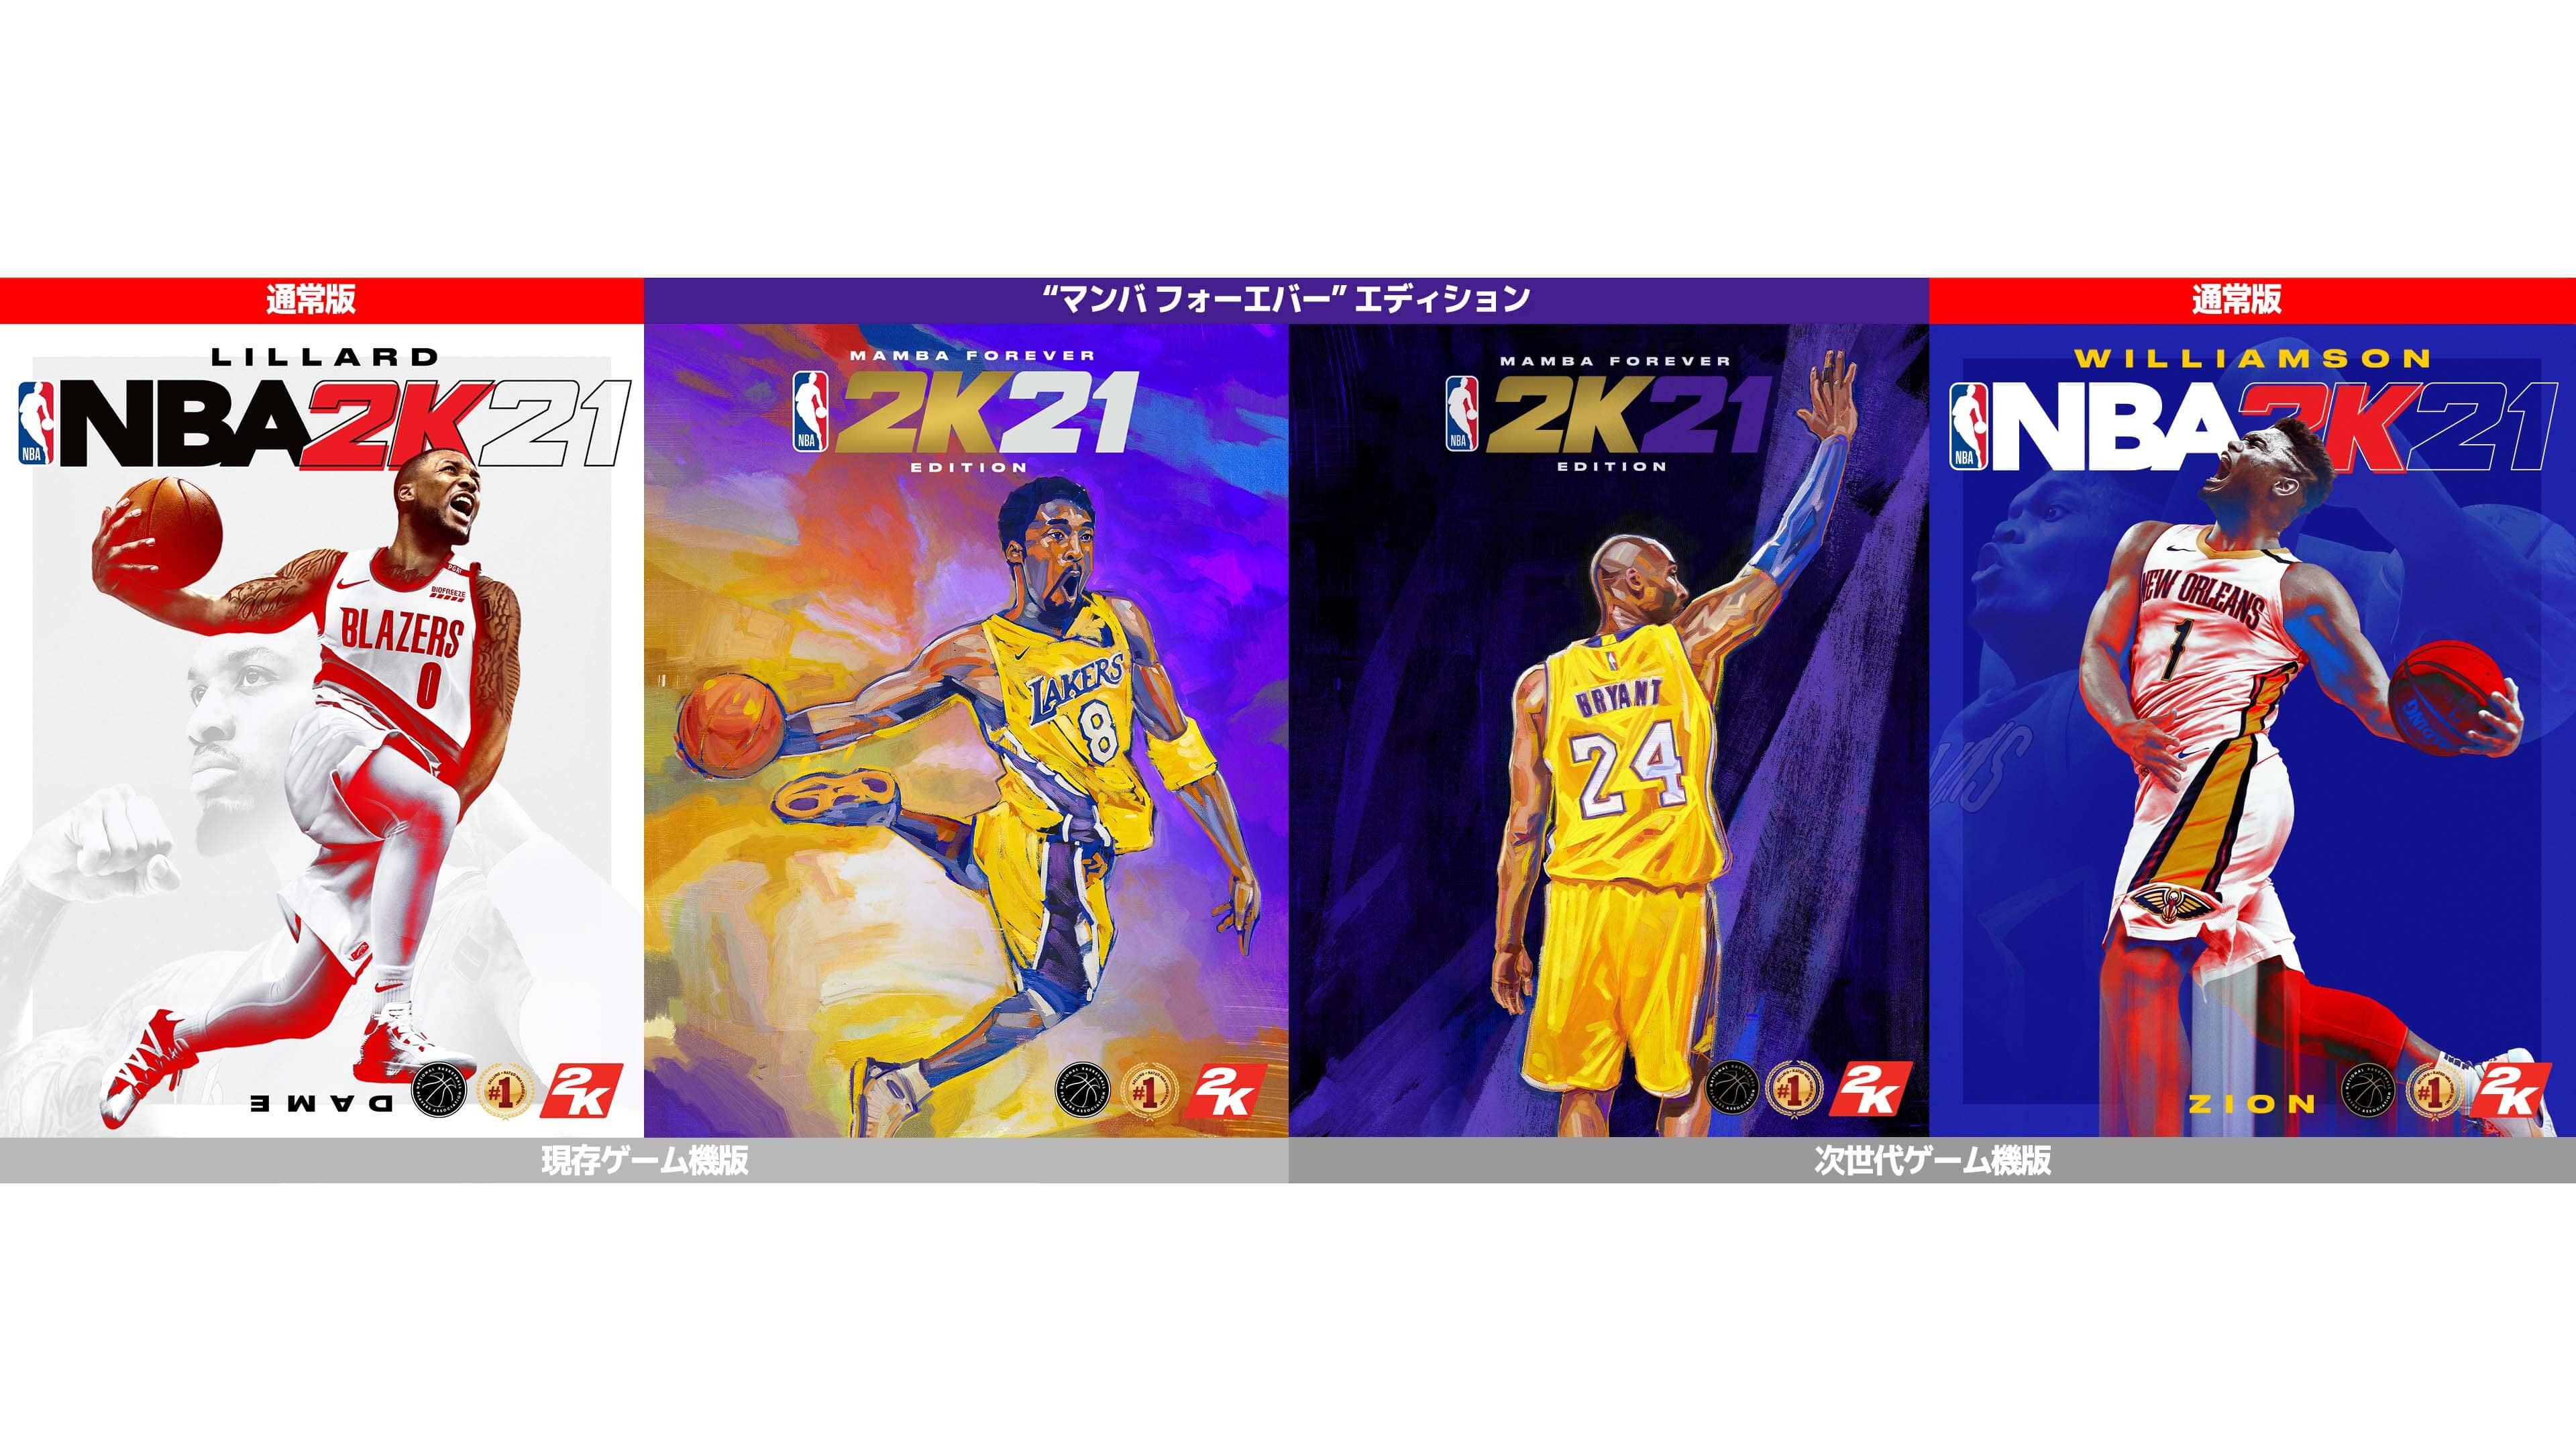 大人気バスケットボールゲーム Nba 2k21 年9月4日 金 発売決定 デイミアン リラード ザイオン ウィリアムソン そしてコービー ブライアントが Nba 2k21 のカバー選手に 2kジャパンオフィシャルサイト